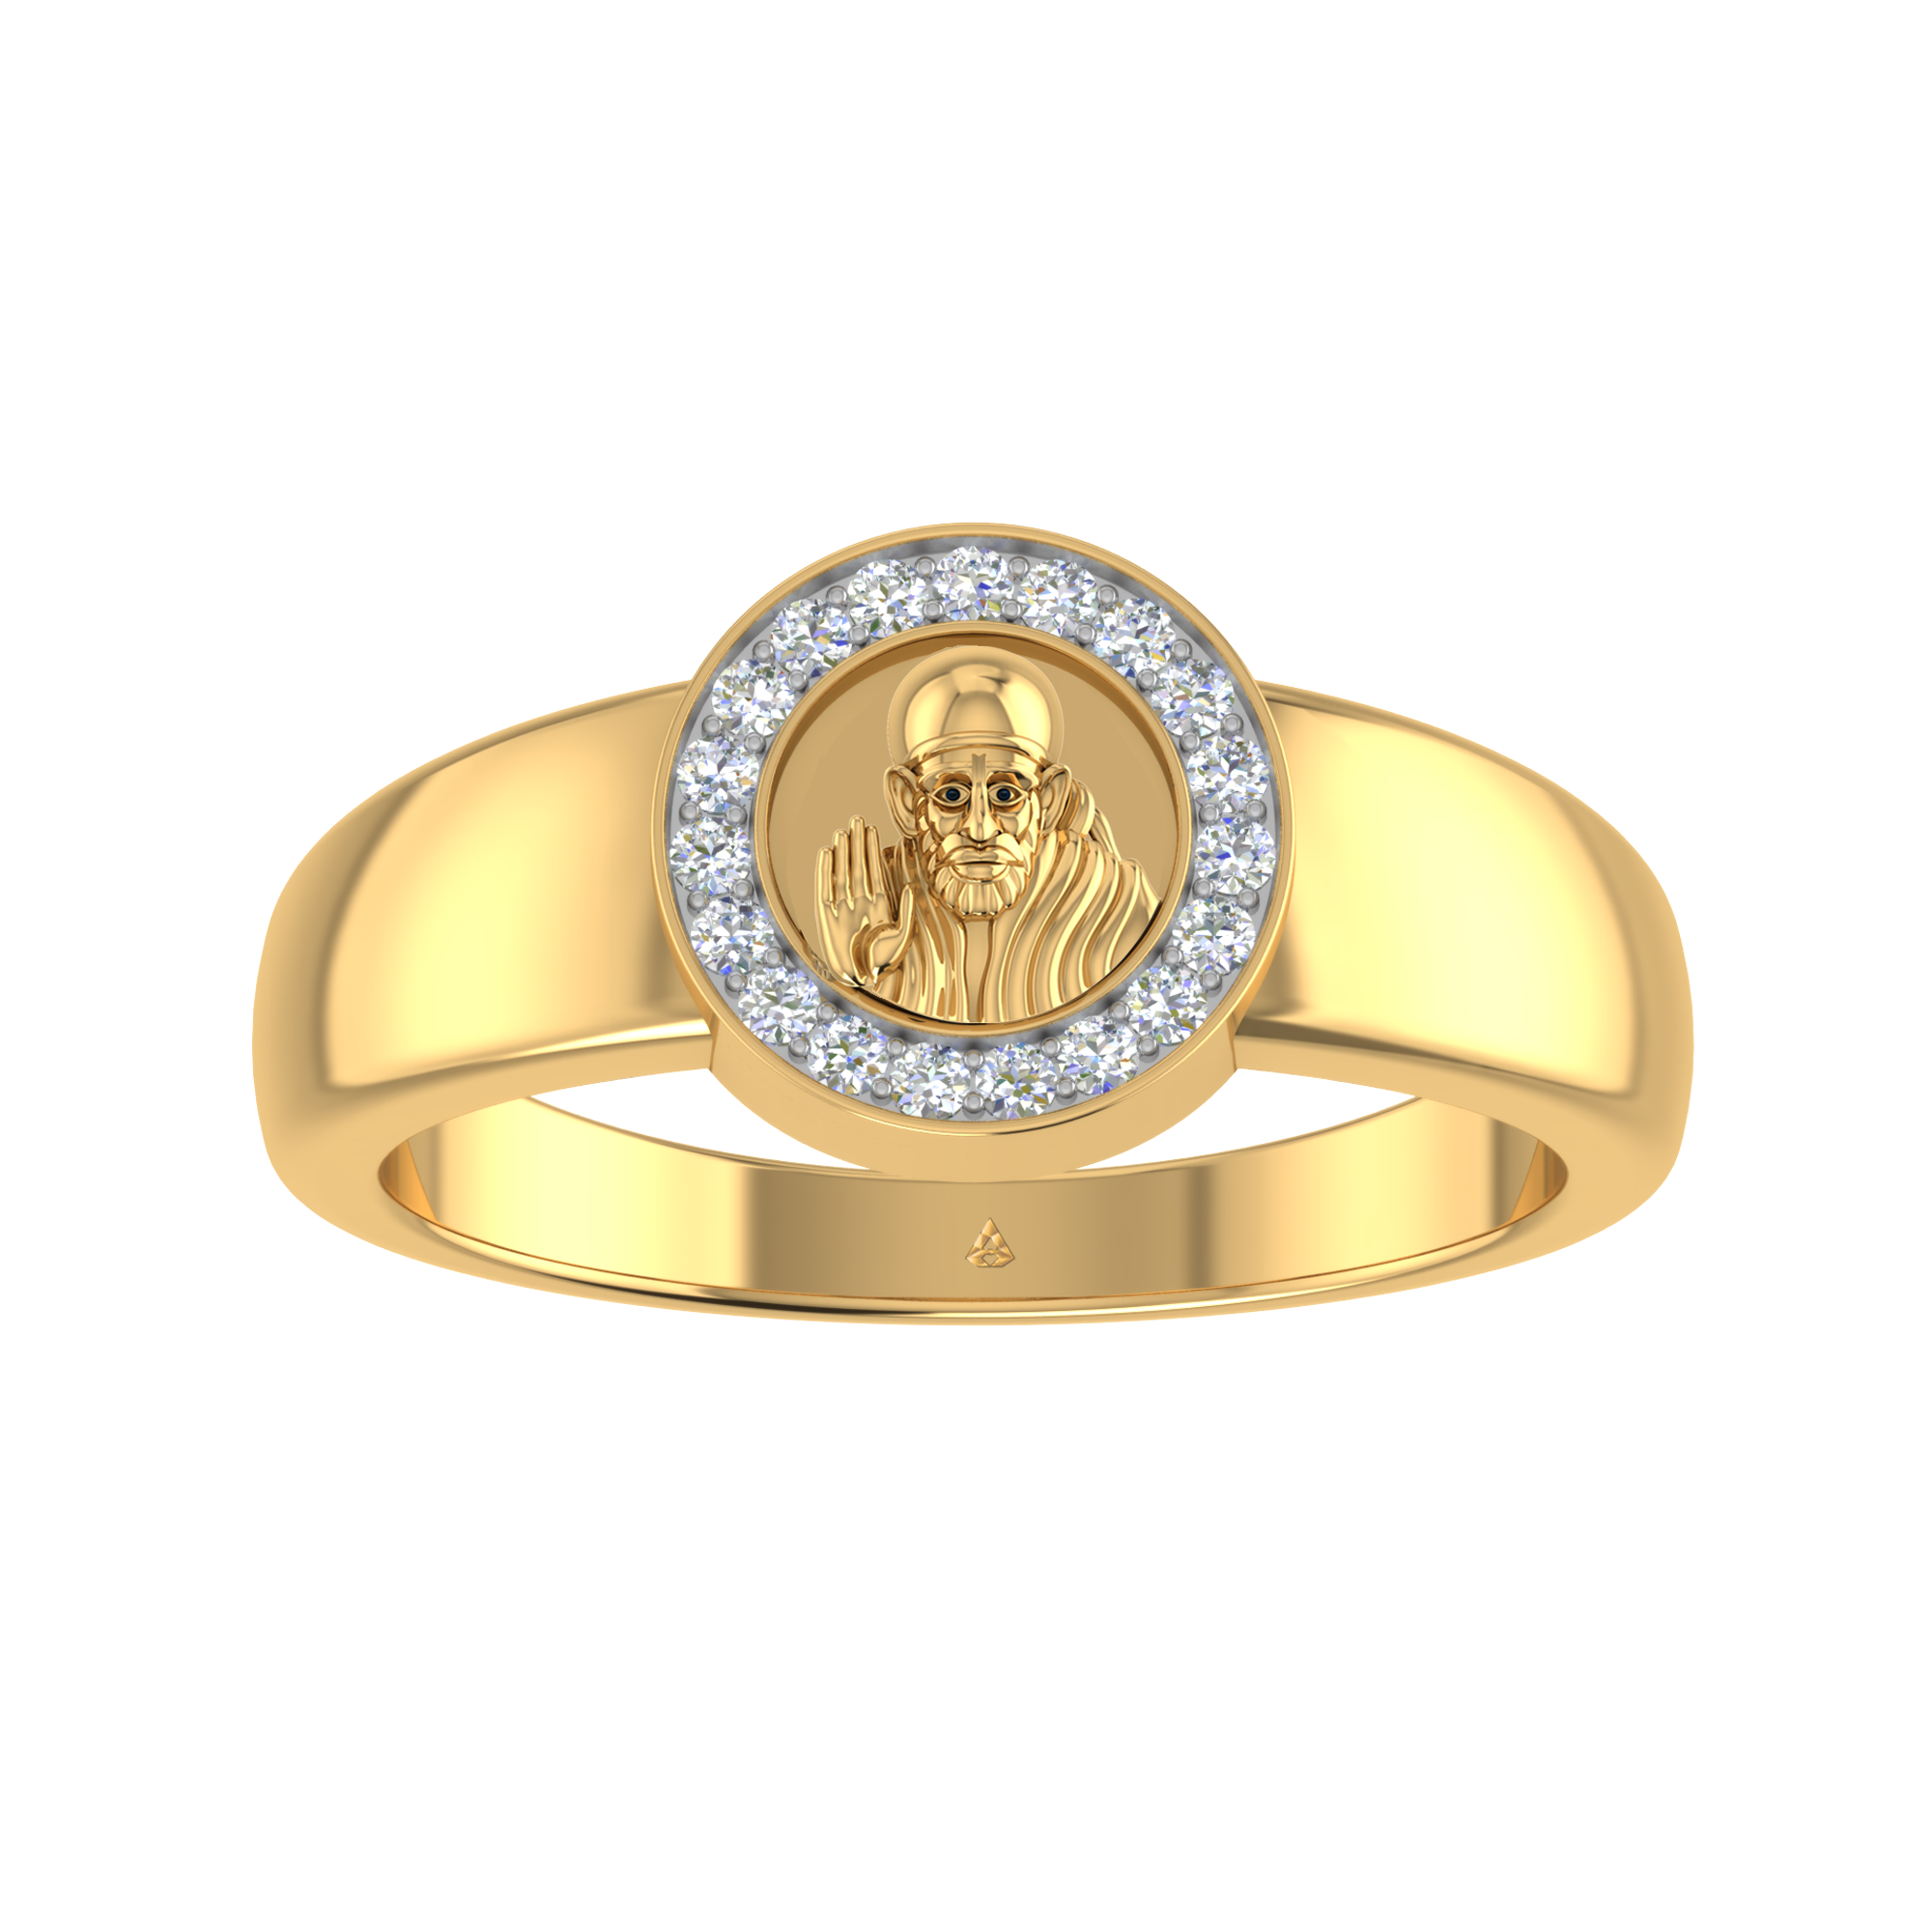 Gold Rings for Men | Buy Latest Designs of Gold Rings for Men